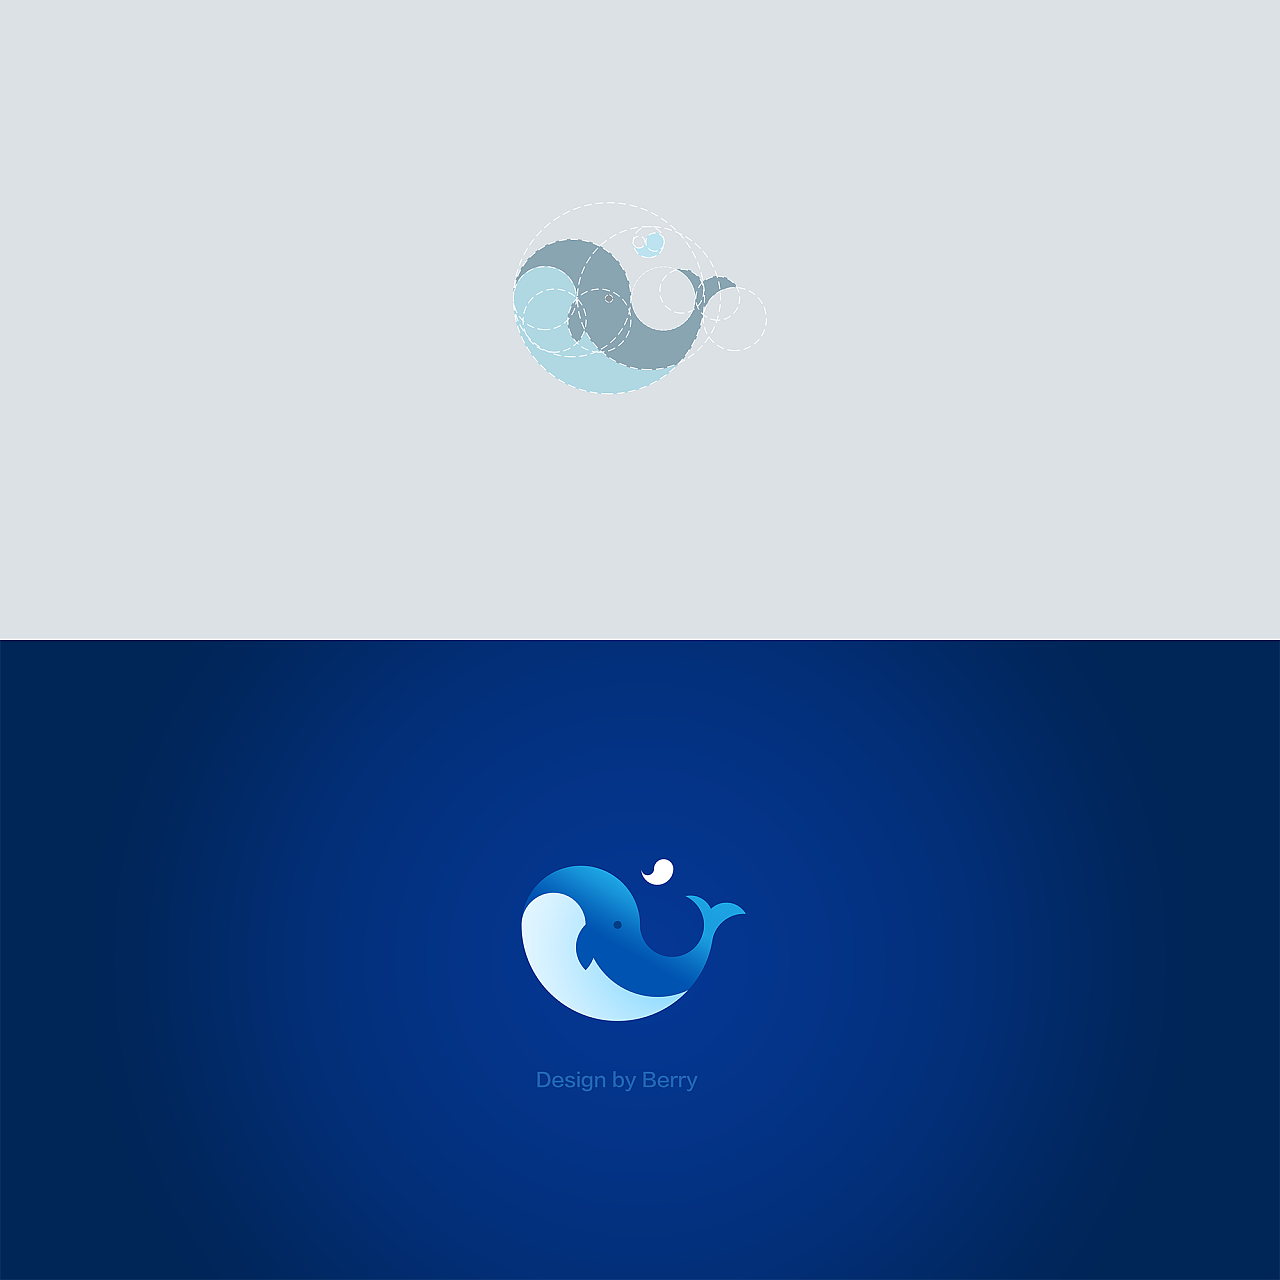 鲸logo 